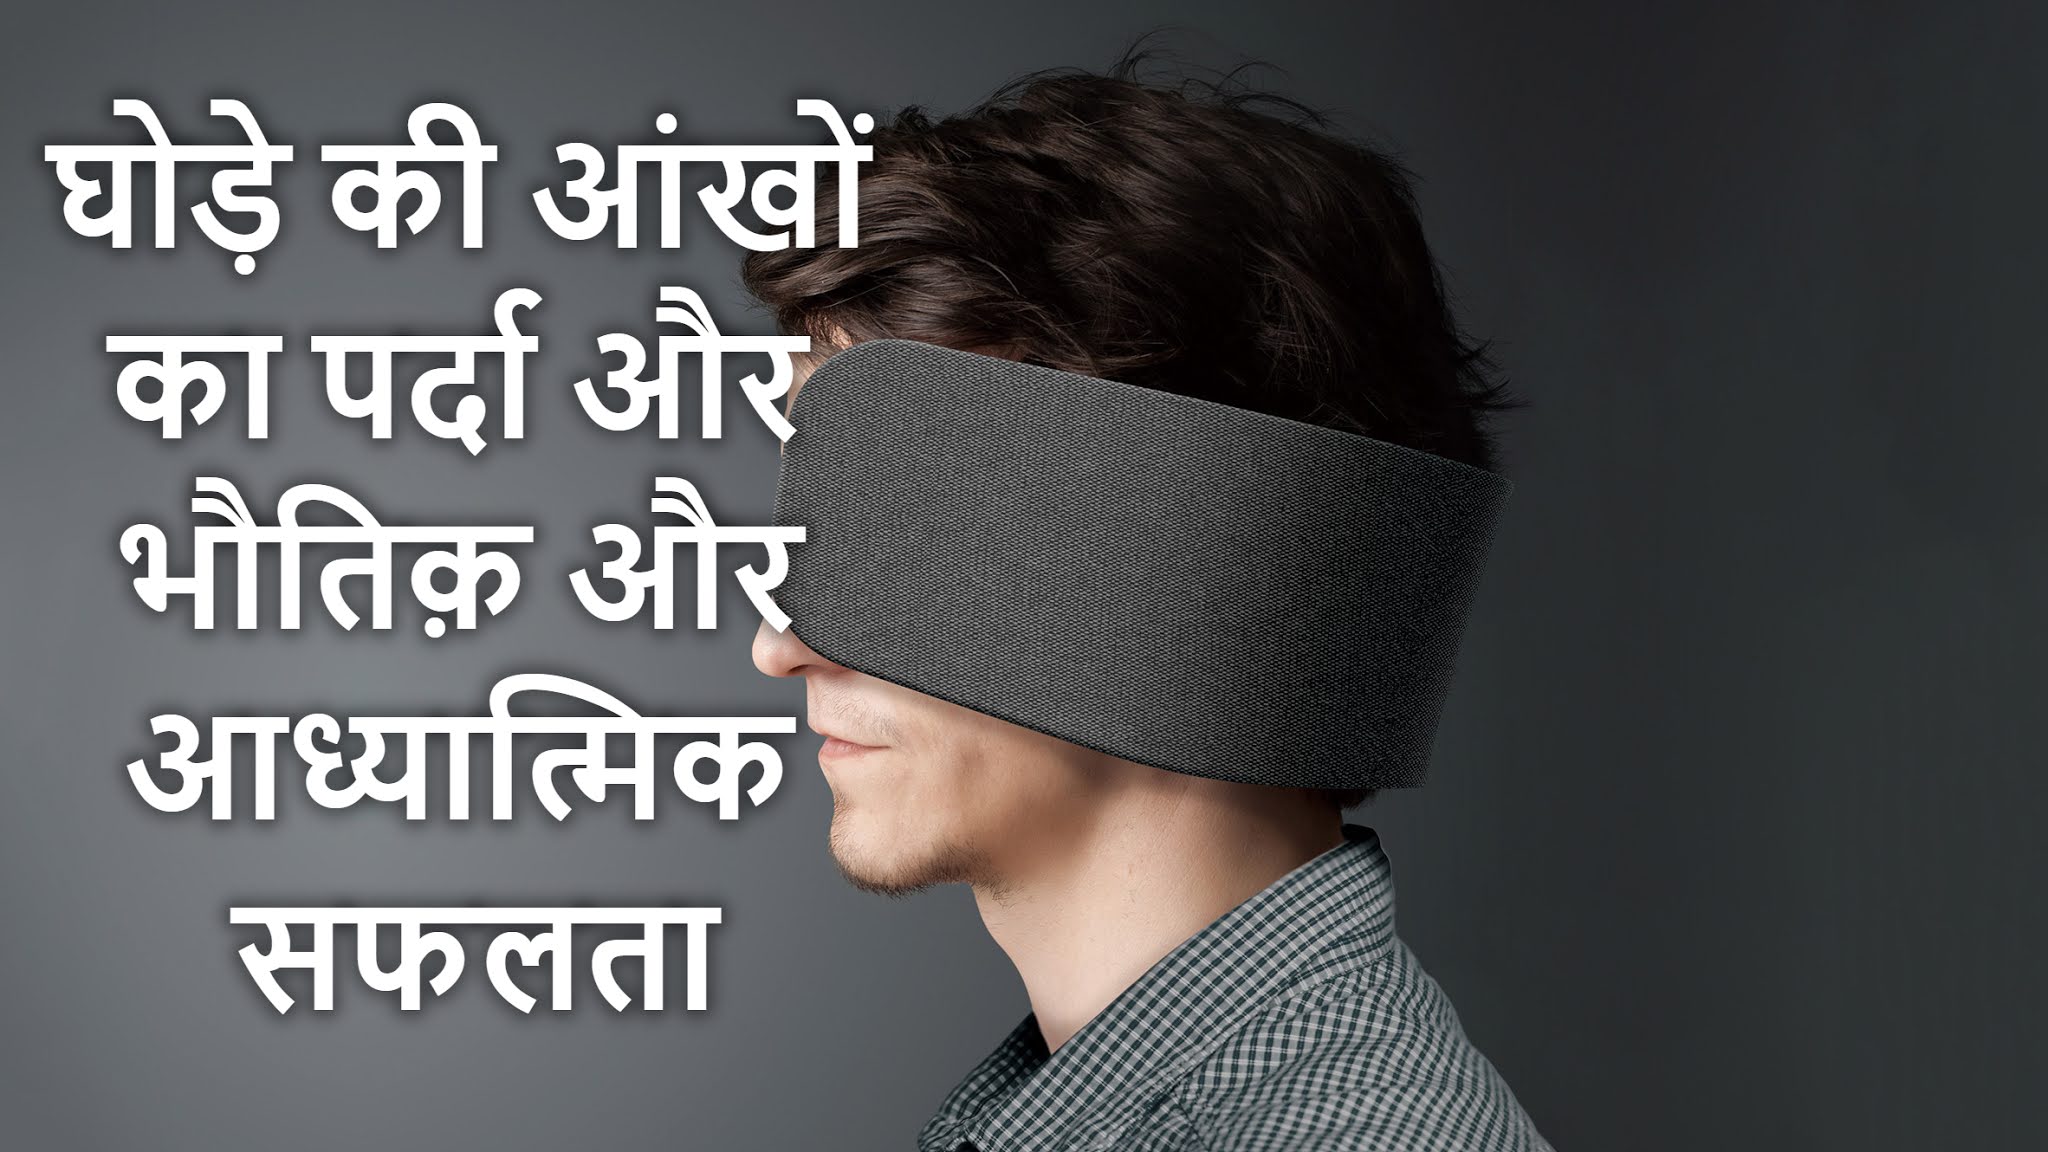 Blindfold meaning in Hindi, Blindfold ka kya matlab hota hai